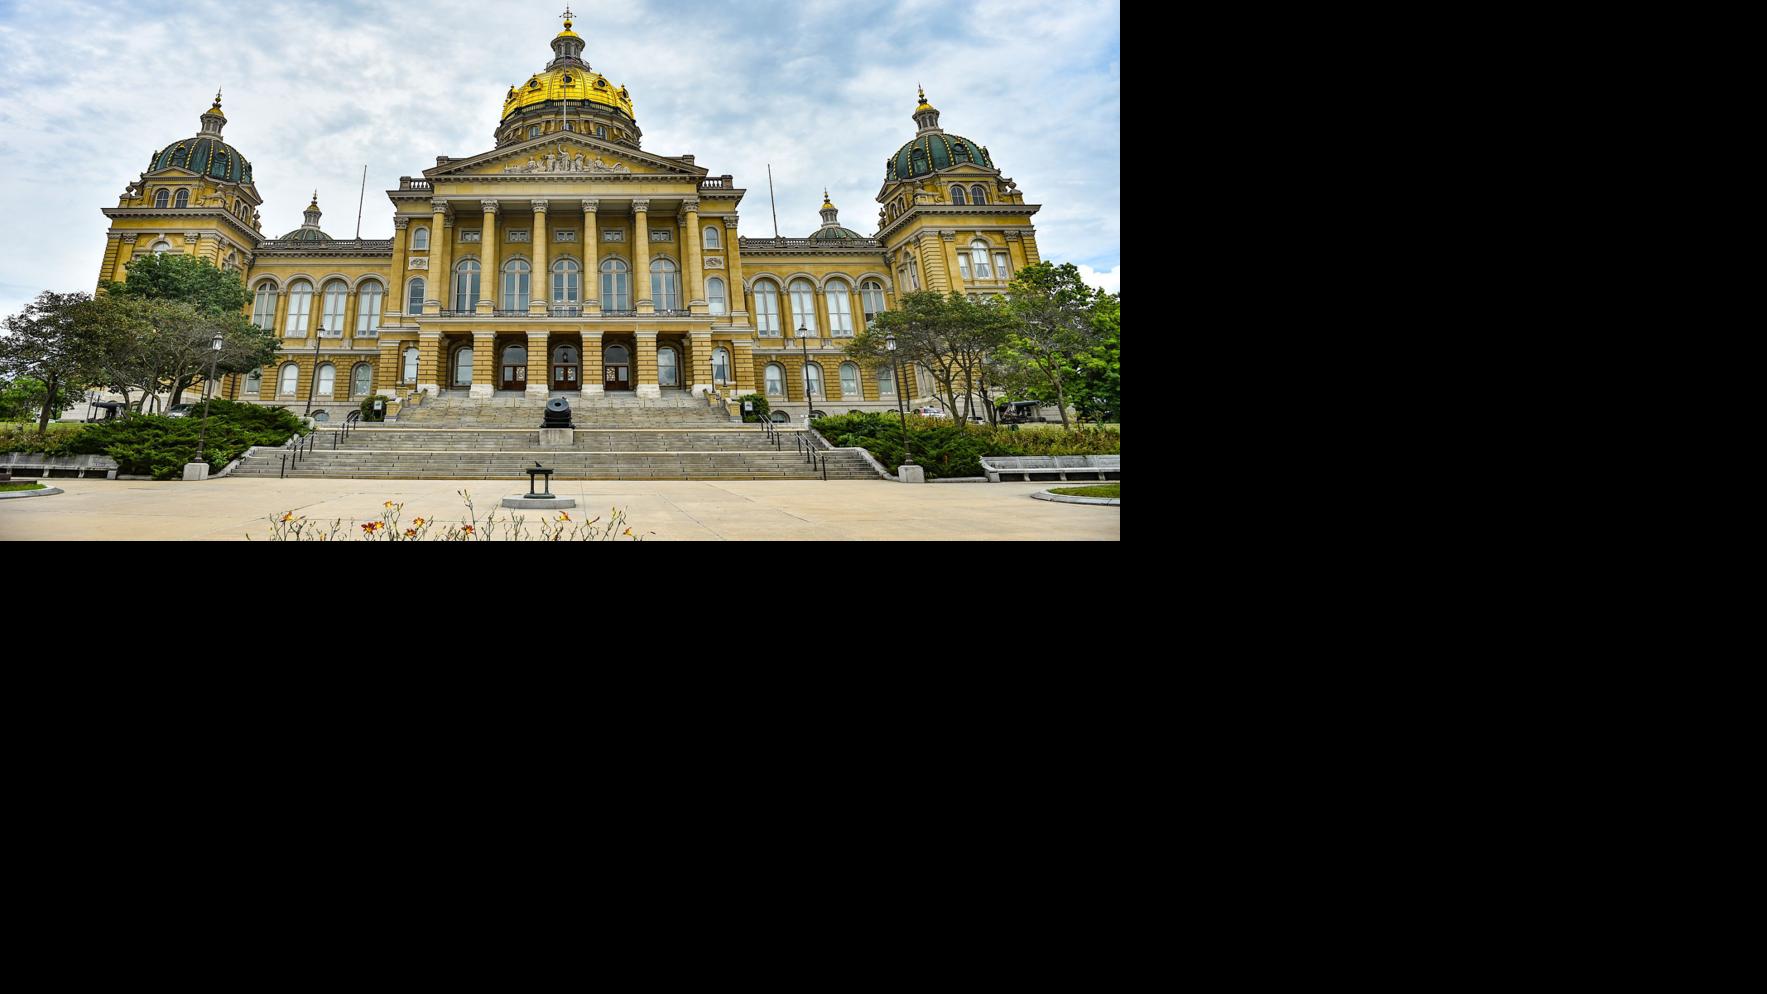 Iowa Senate’s license plate bill raises concerns about law enforcement